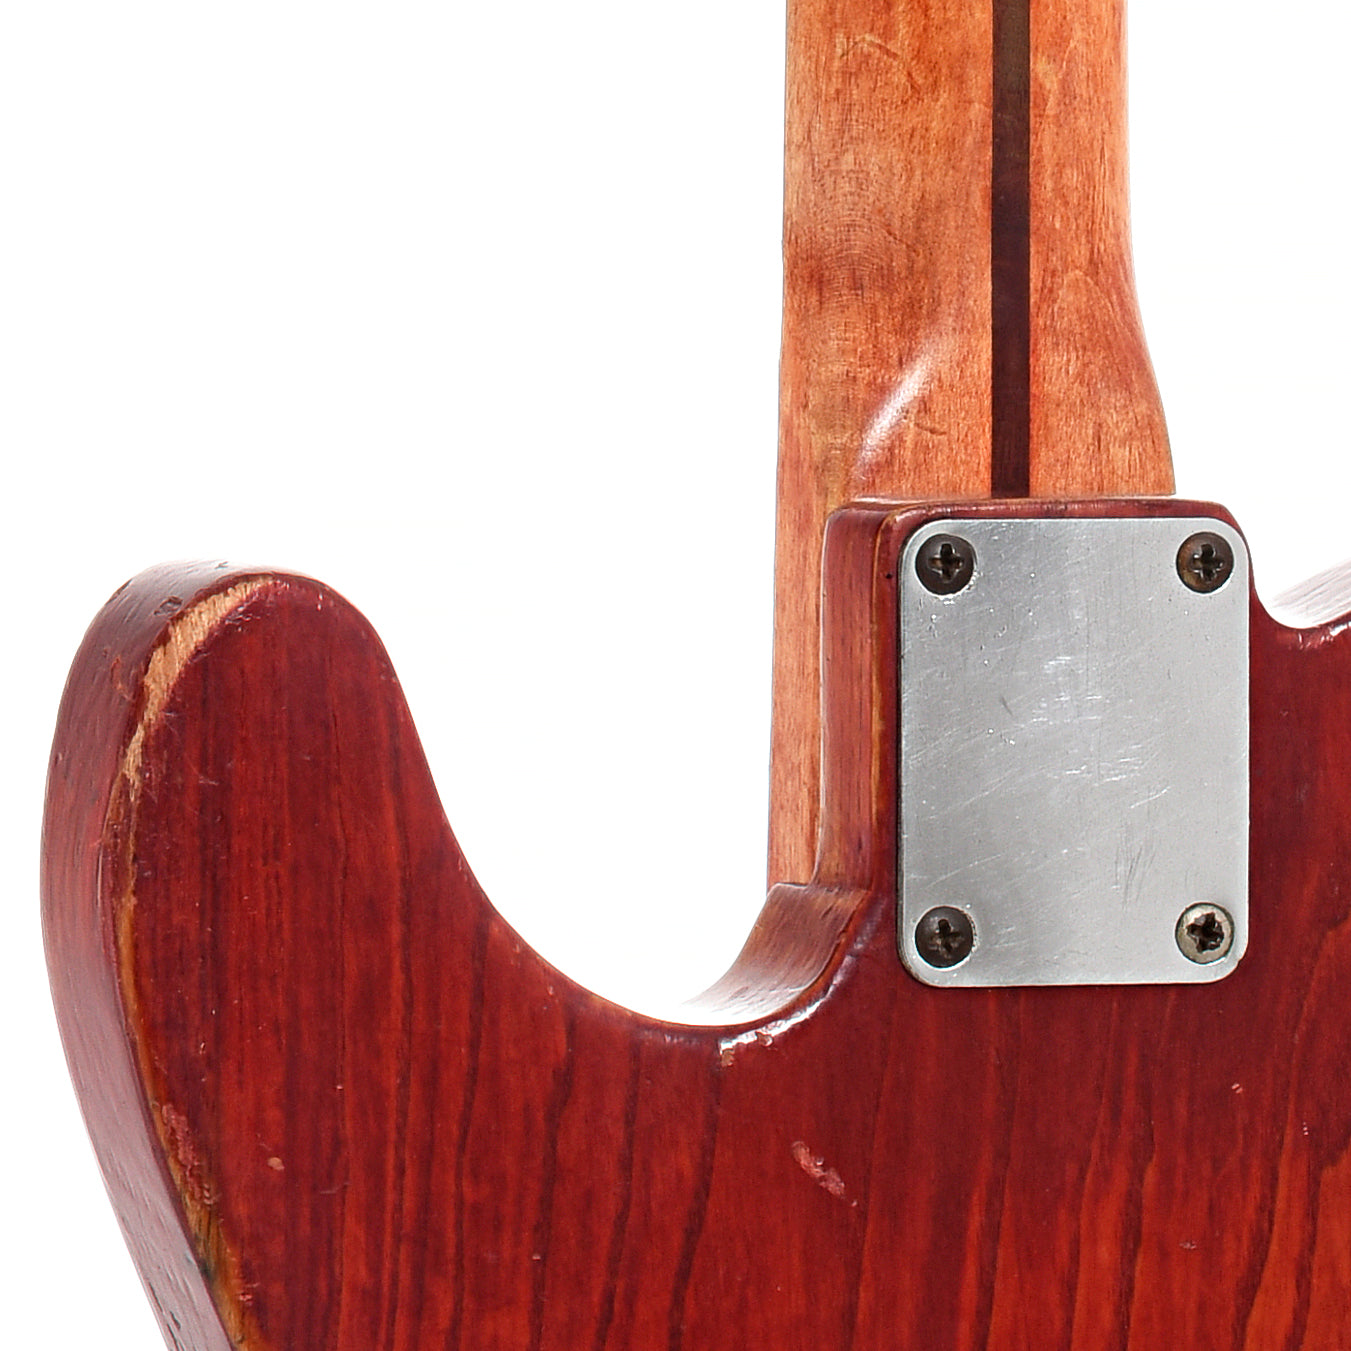 Neck joint of 1952 Fender Telecaster 